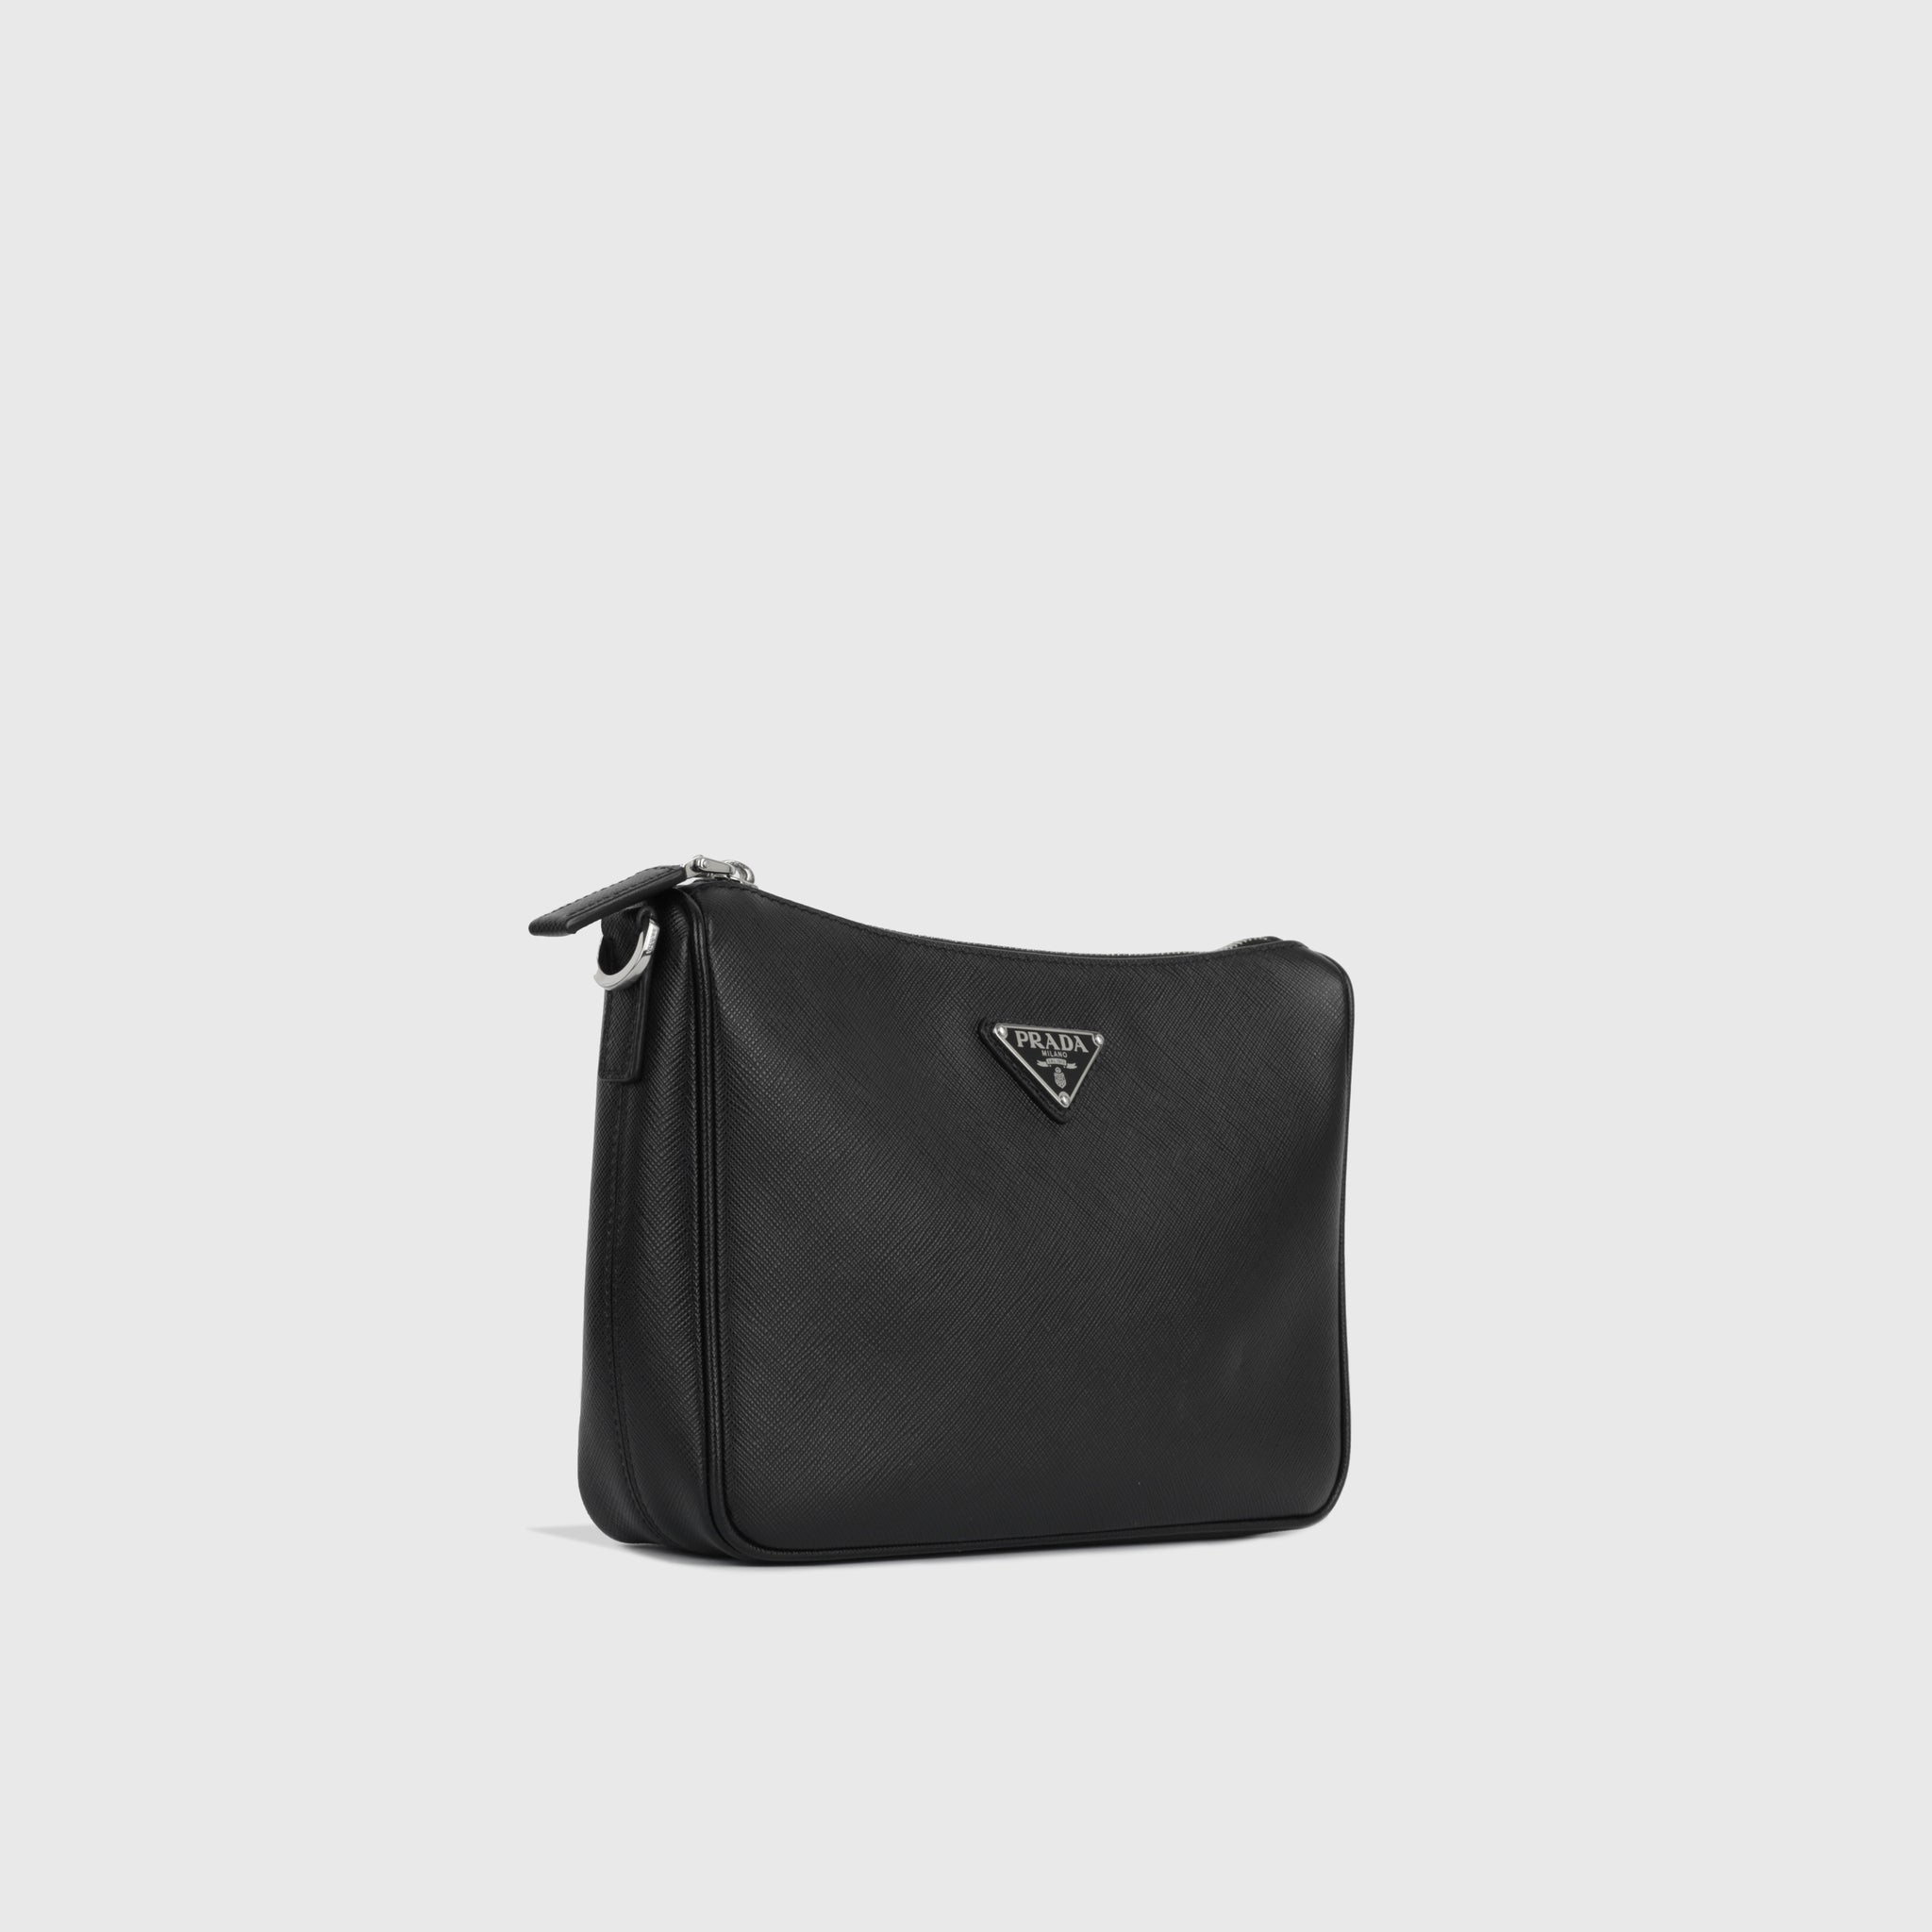 PRADA Saffiano-leather crossbody bag